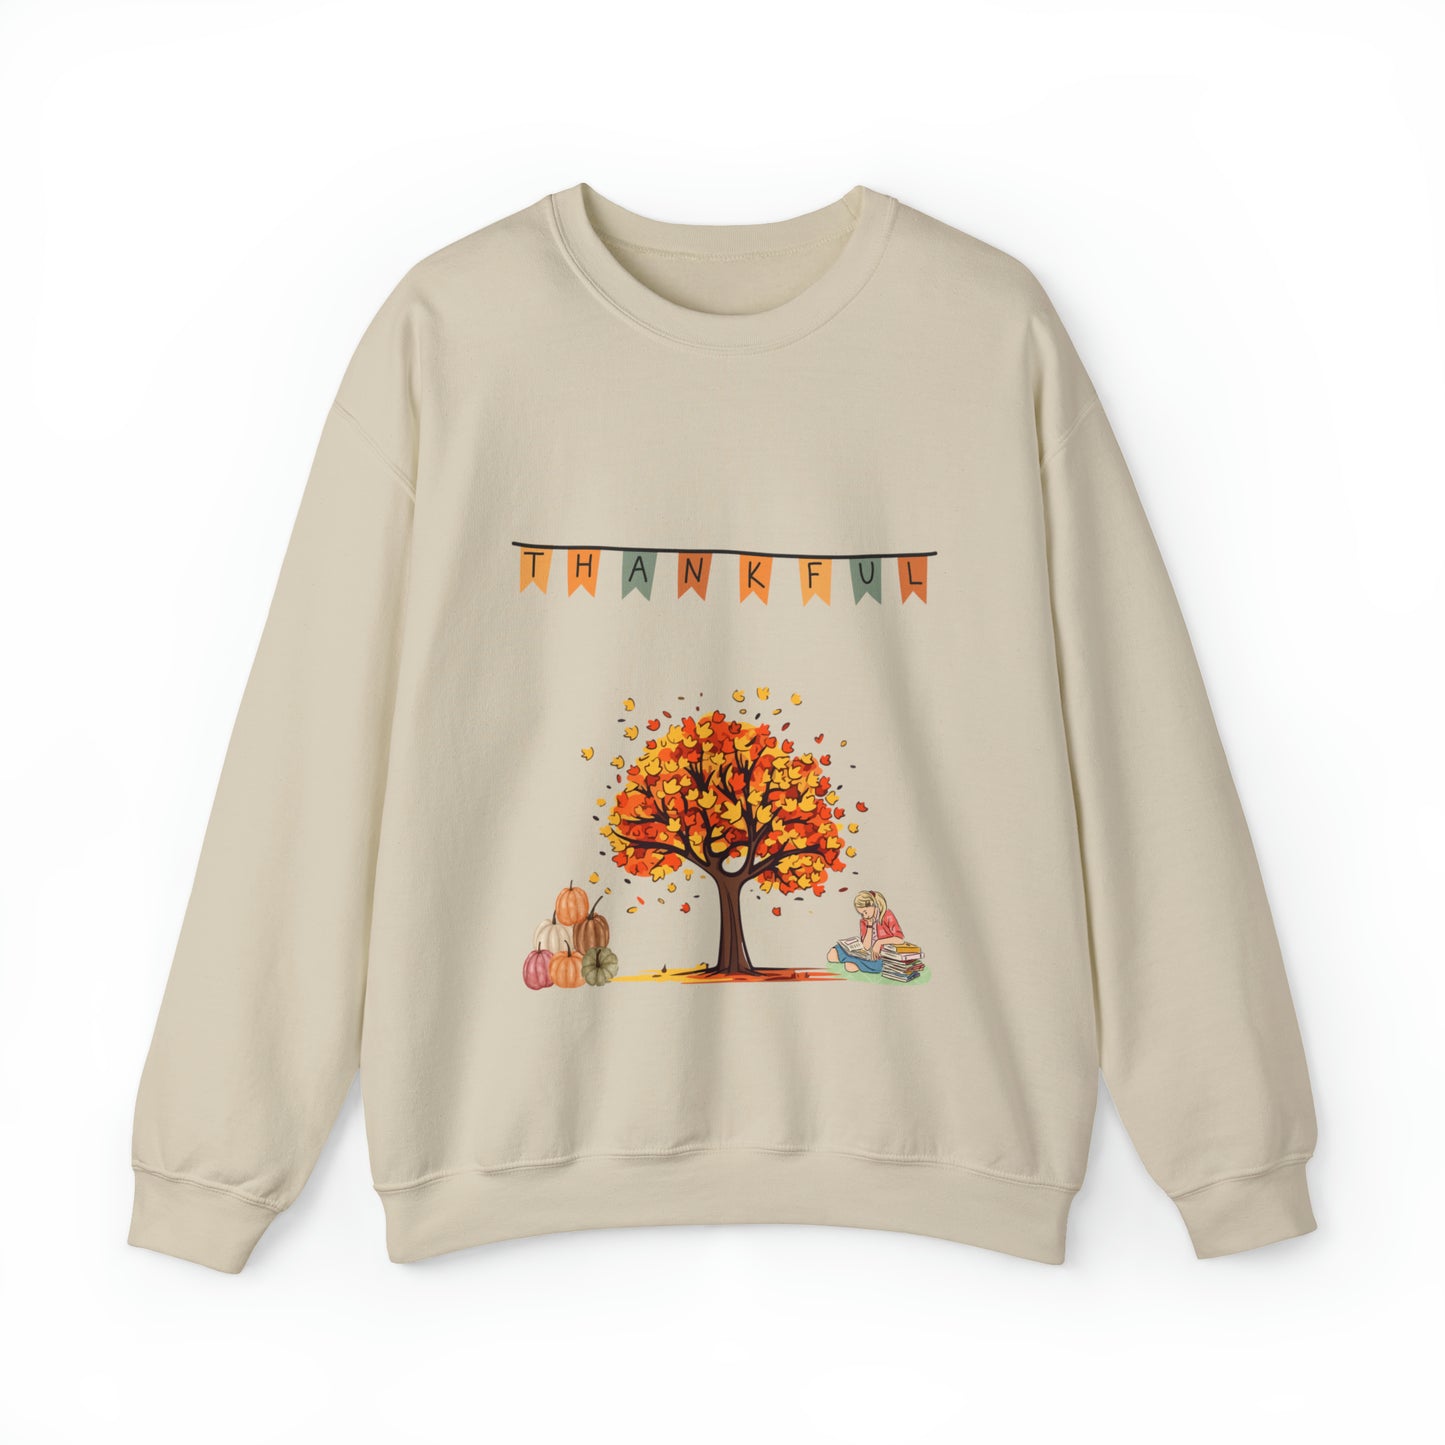 Fall Thankful Sweater!